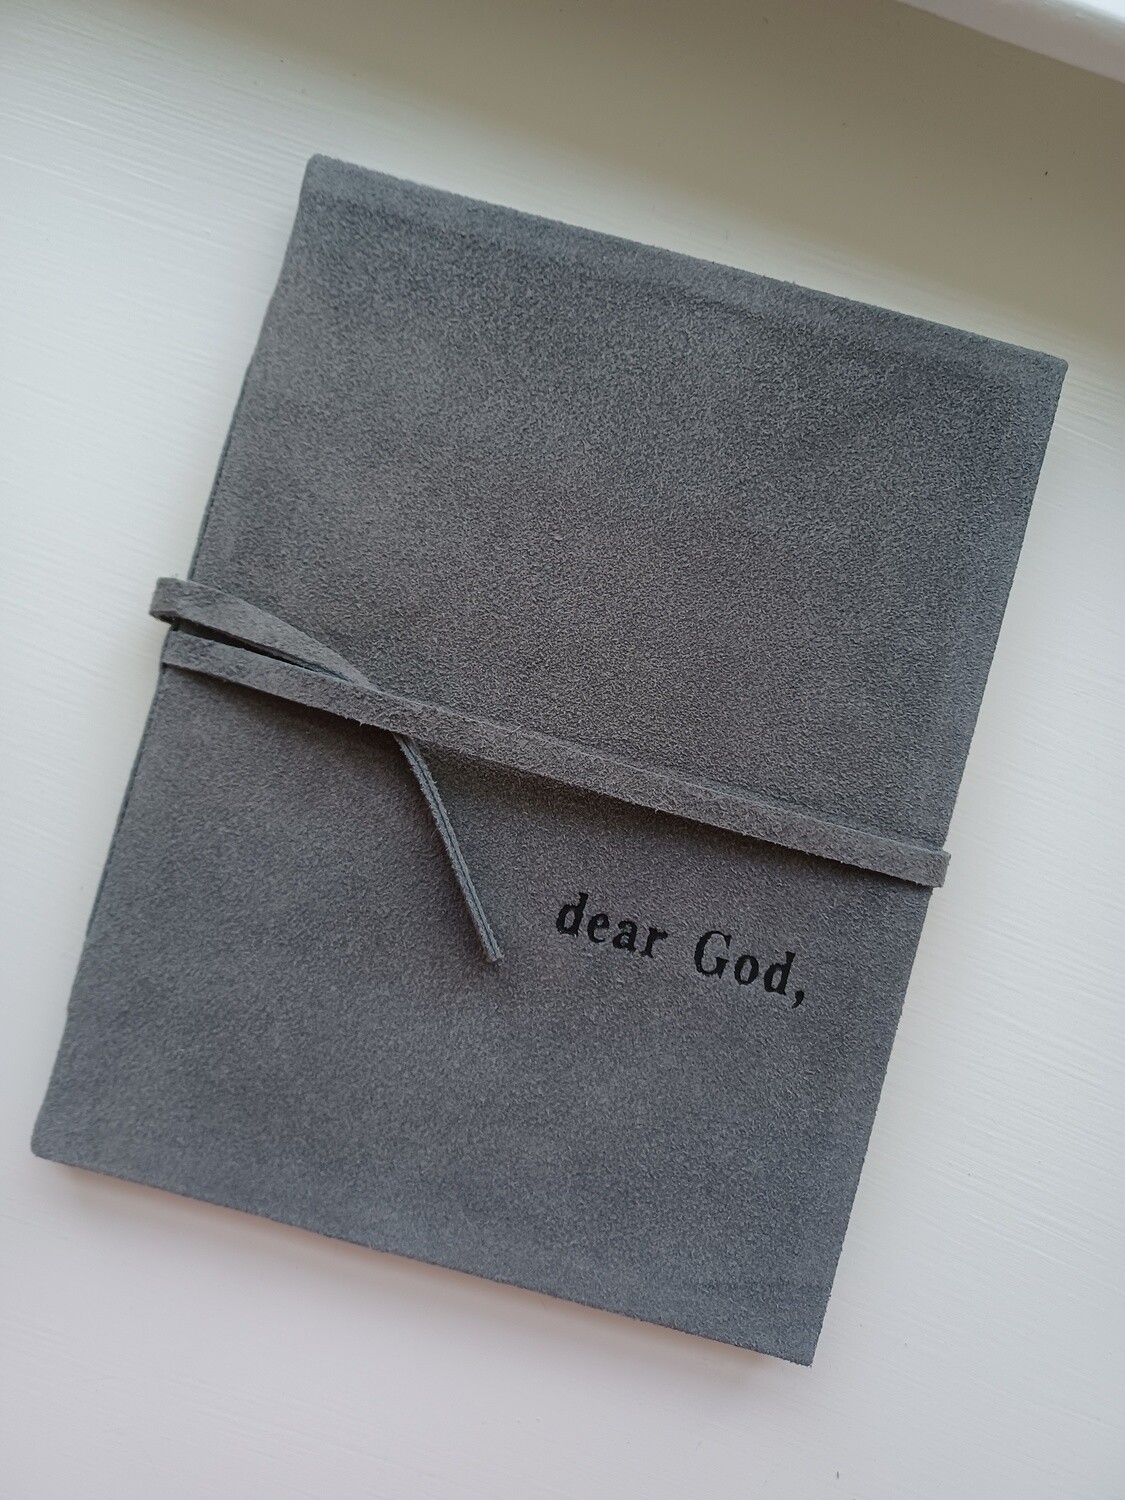 Dear God Journal